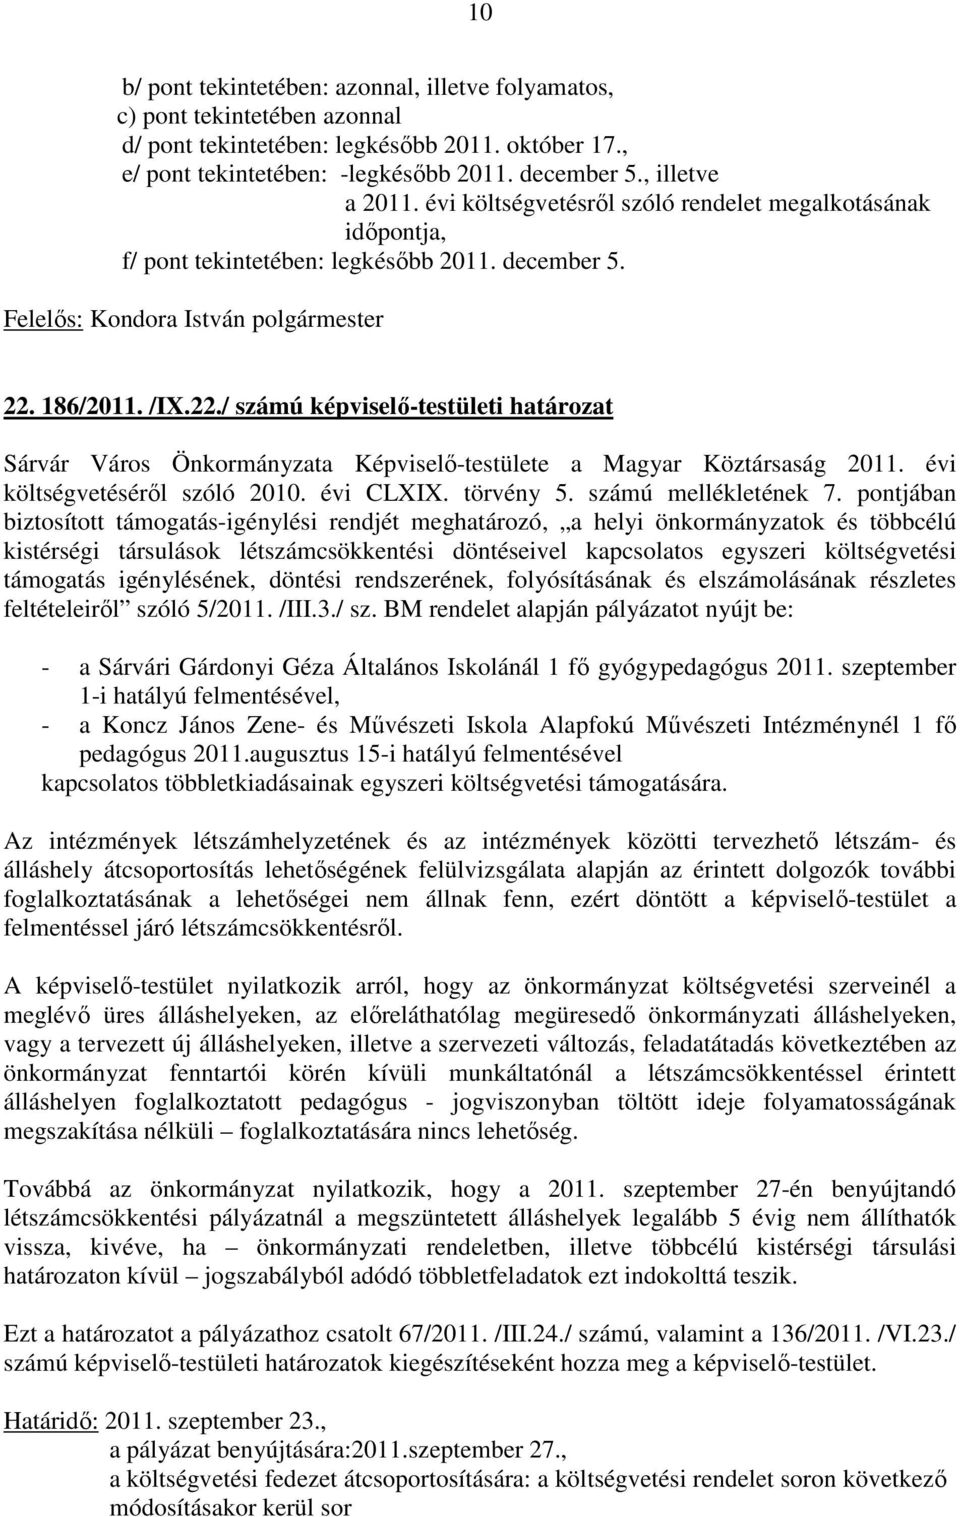 186/2011. /IX.22./ számú képviselő-testületi határozat Sárvár Város Önkormányzata Képviselő-testülete a Magyar Köztársaság 2011. évi költségvetéséről szóló 2010. évi CLXIX. törvény 5.